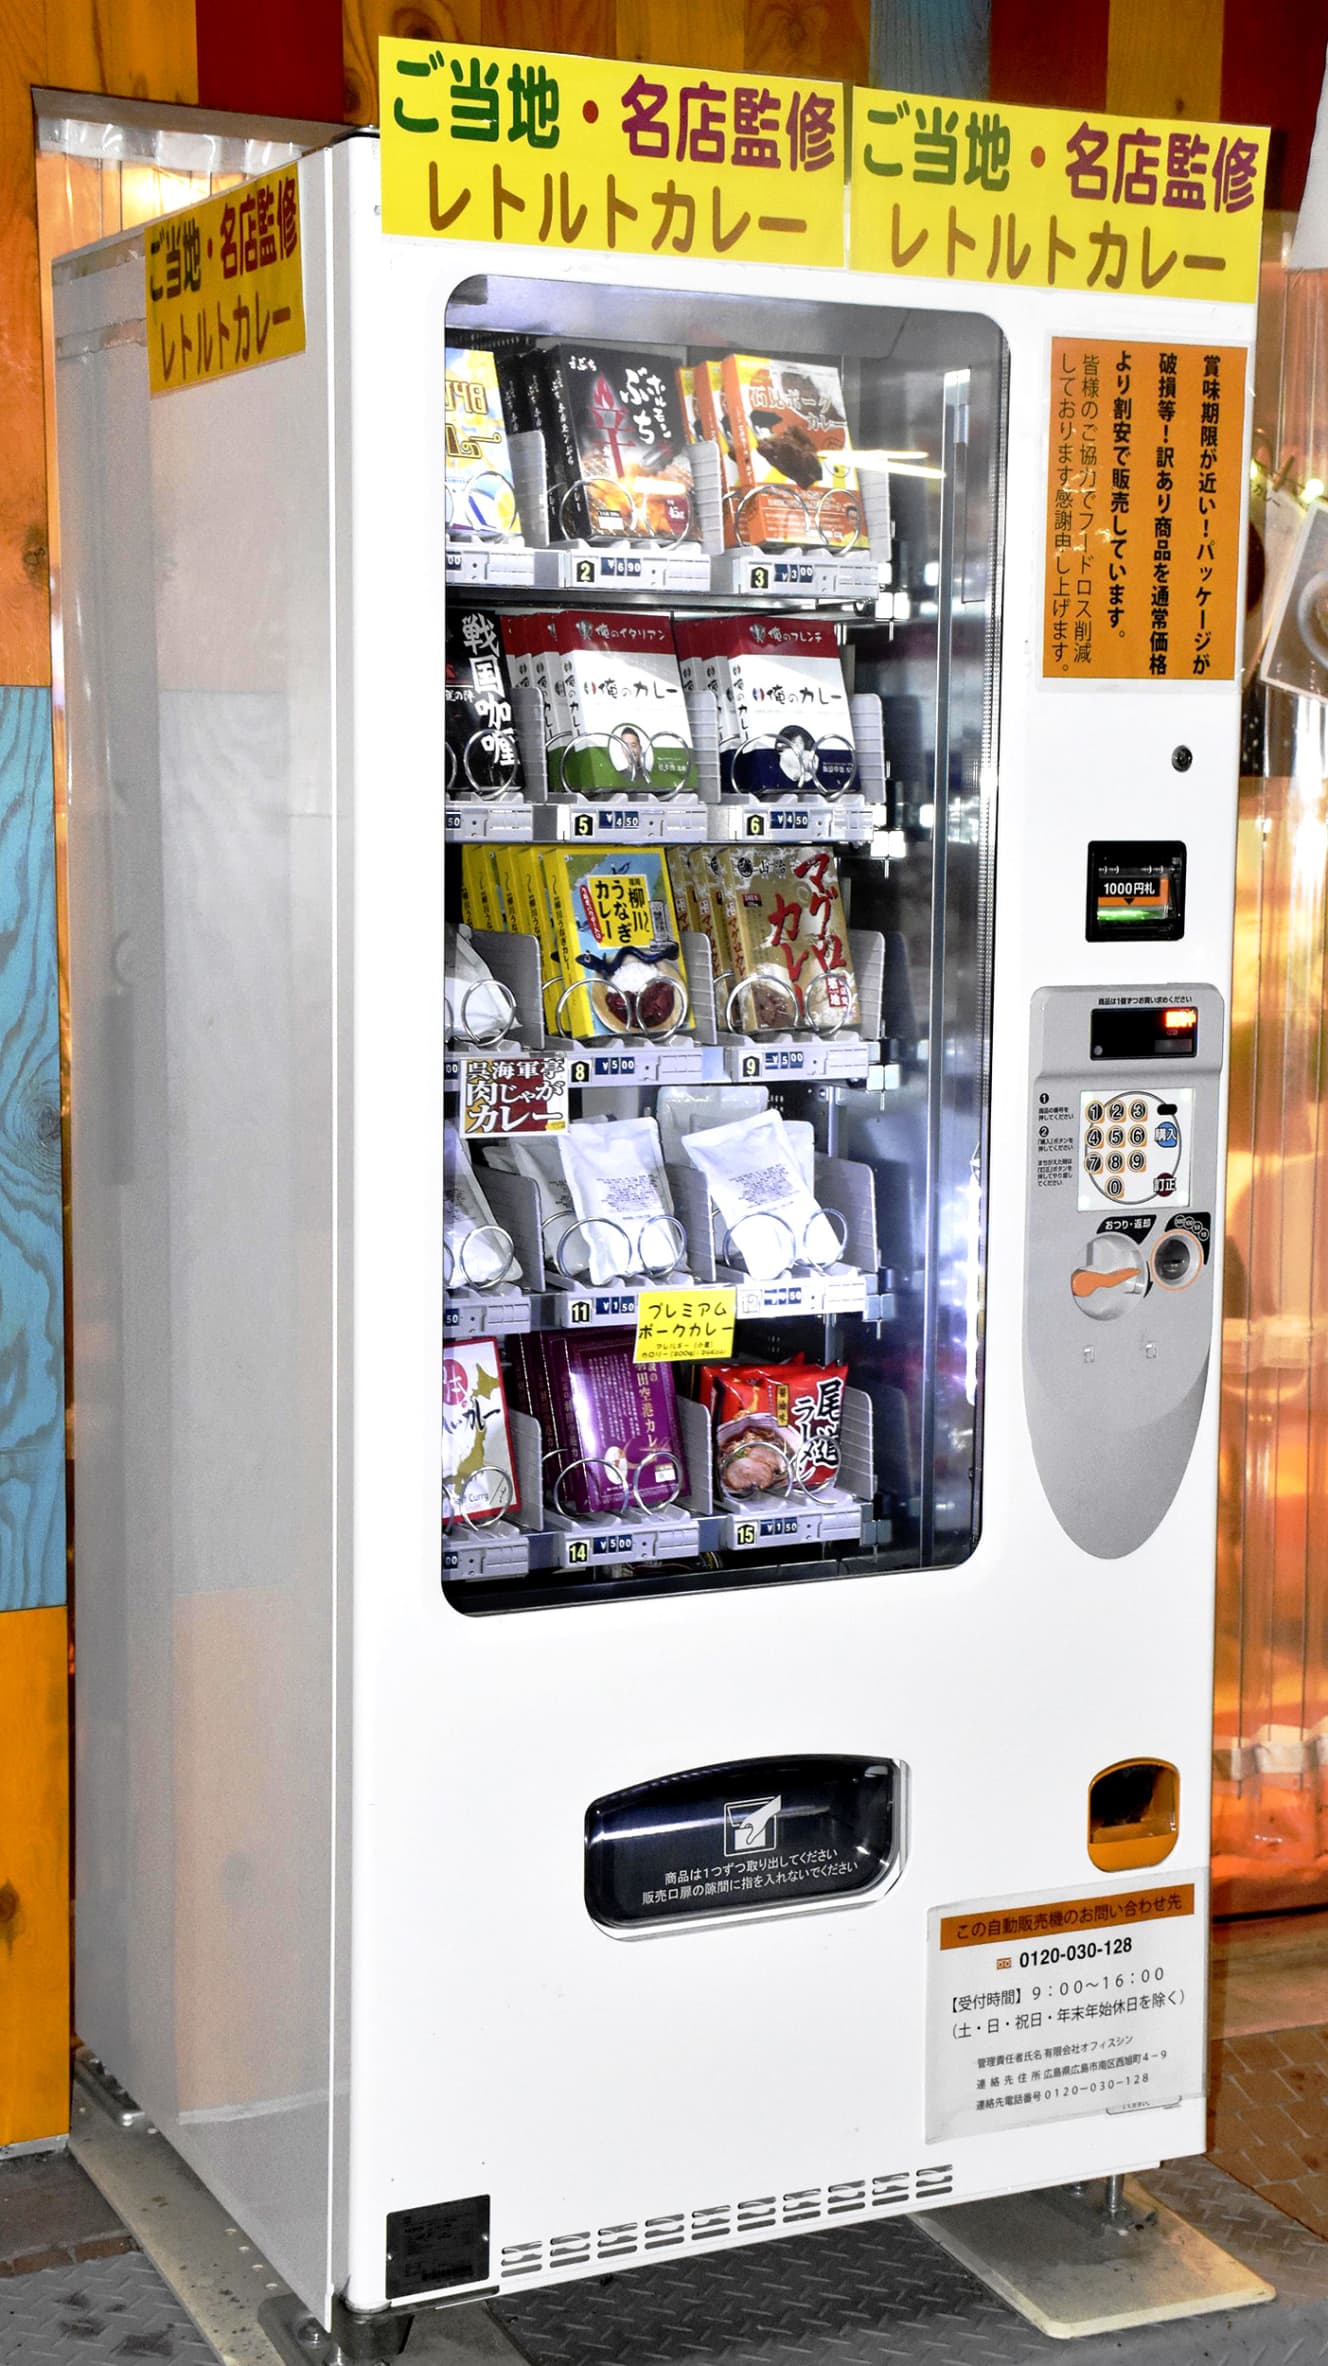 ご当地レトルトカレーの自動販売機が全国各地に登場。北海道ならホタテ、沖縄はマンゴーと、名産が入る